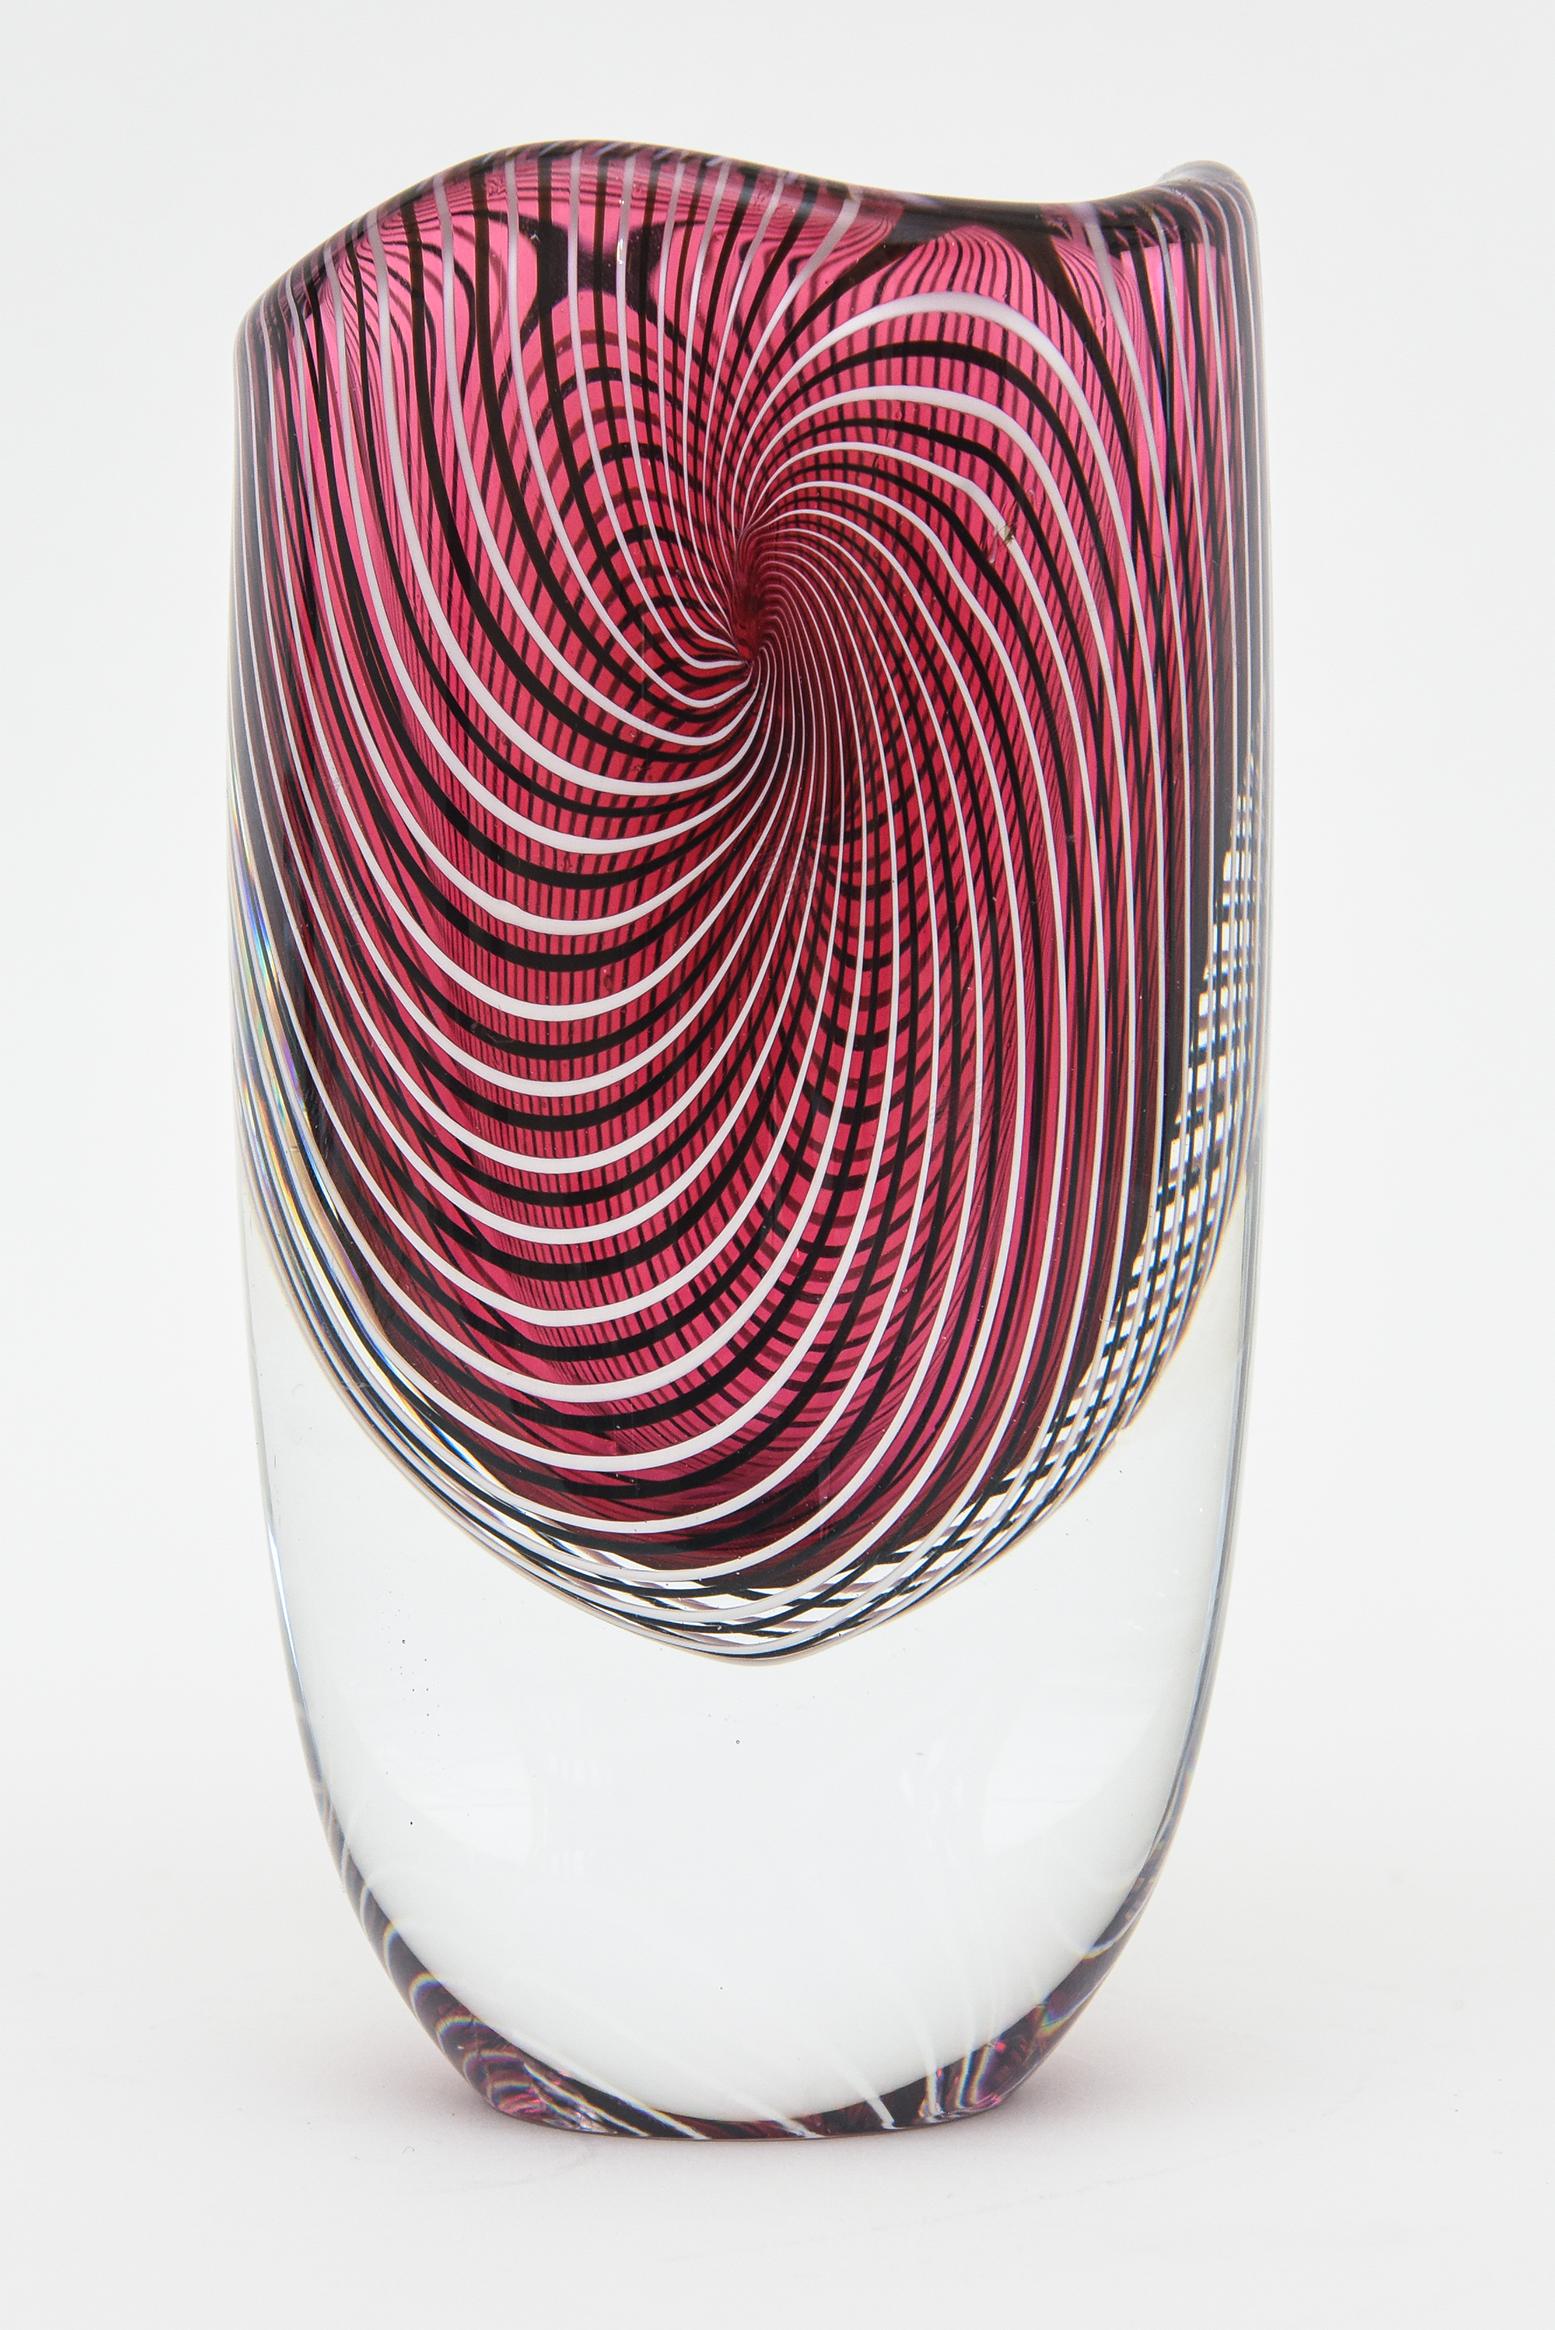 Diese faszinierend schöne Vintage-Vase aus Murano von Seguso Viro hat ein großes Gewicht und ist von einem spiralförmigen Muster aus durchgehenden Streifen umgeben. Das Oberteil hat einen leichten Wellenschliff.
Das originale Label ist intakt und